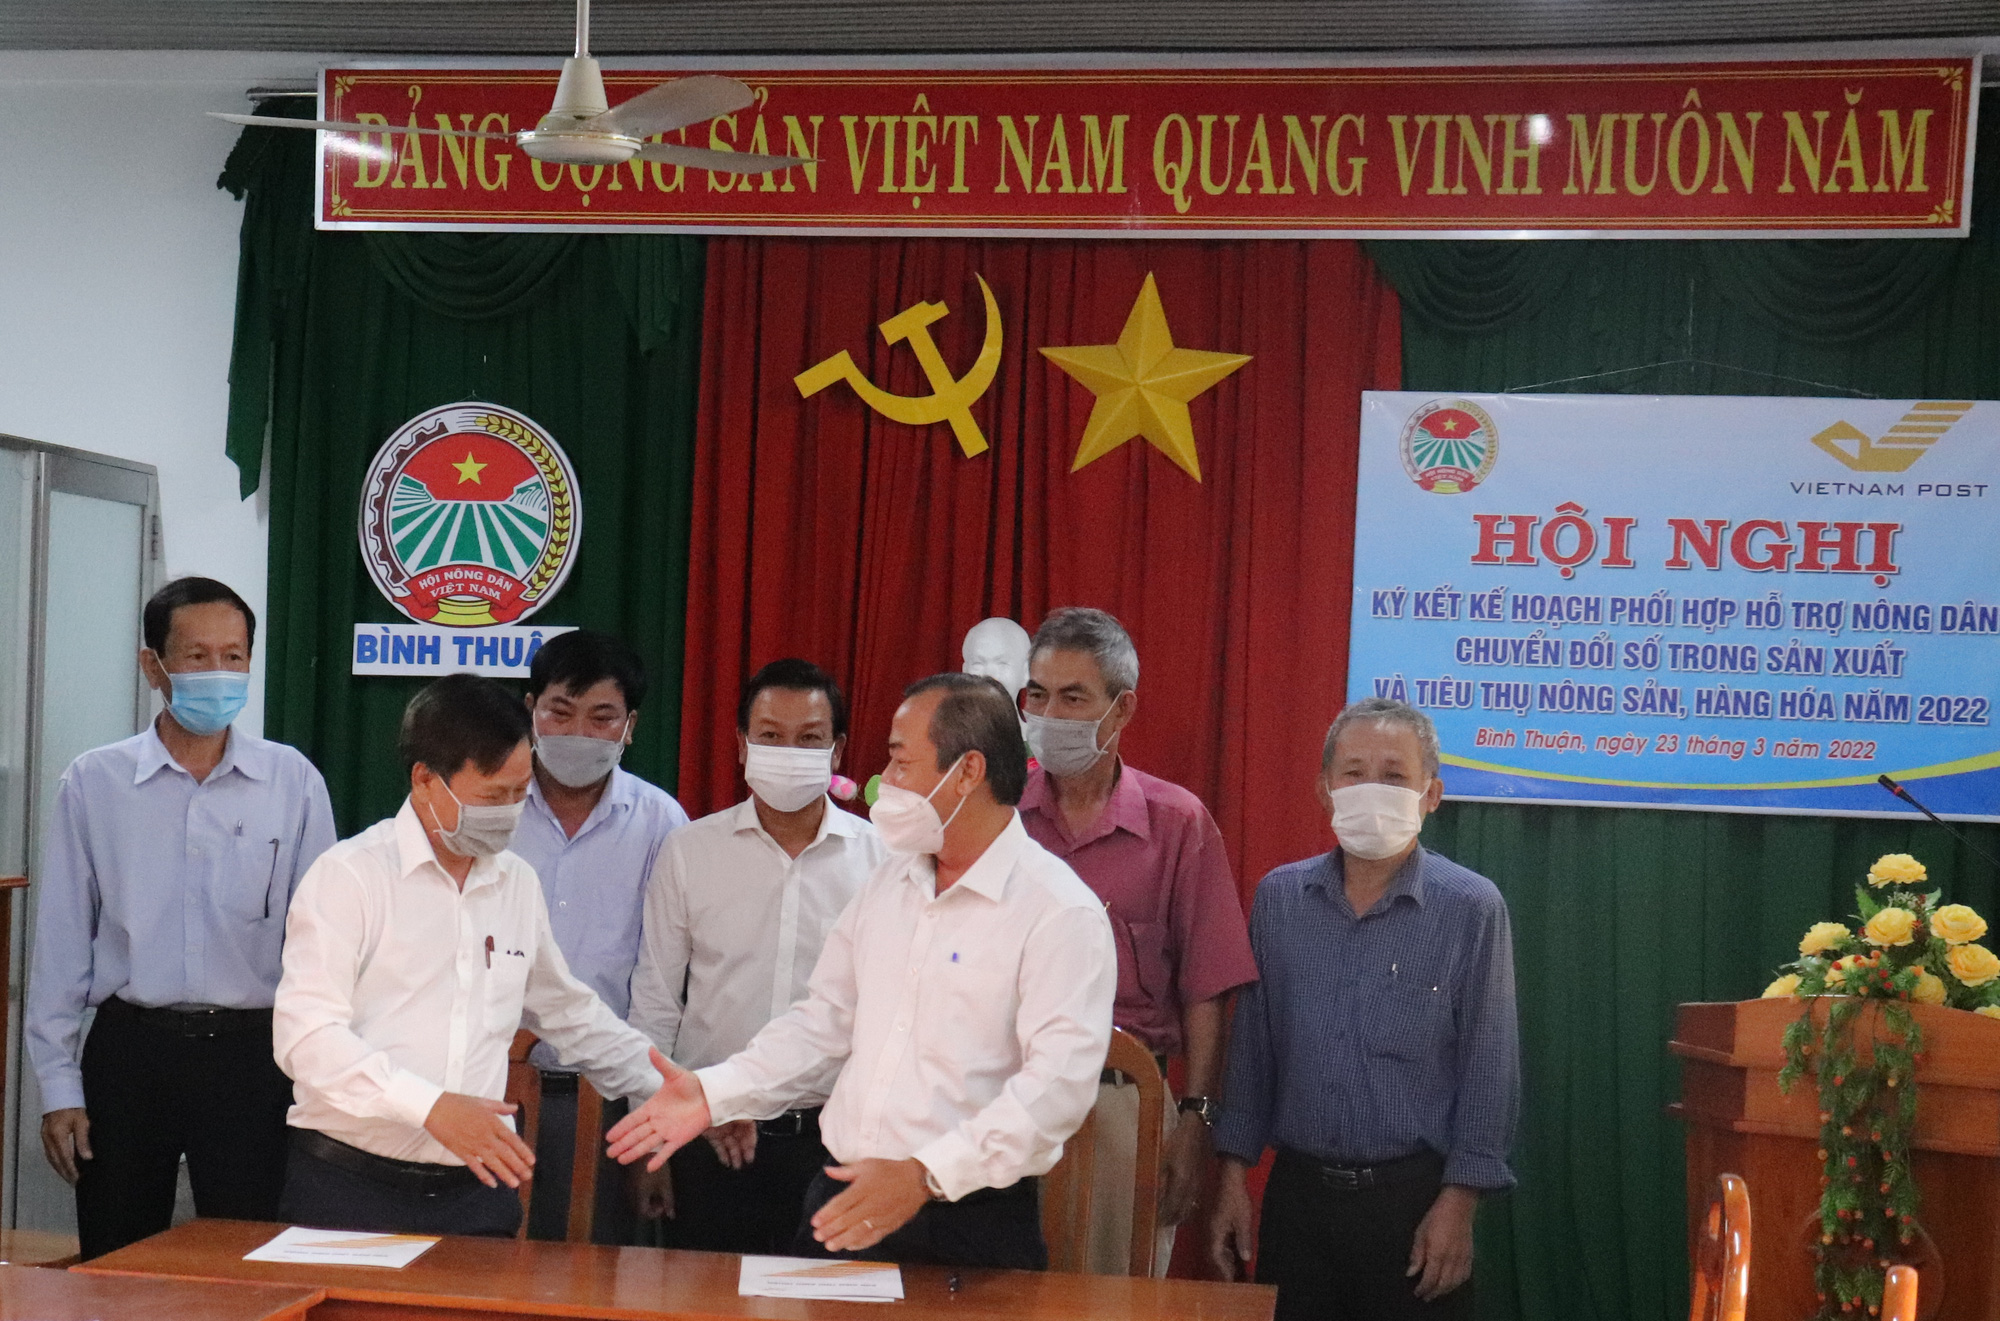 Bình Thuận: Hội Nông dân và Bưu điện ký kết thỏa thuận hợp tác hỗ trợ nông dân chuyển đổi số - Ảnh 1.